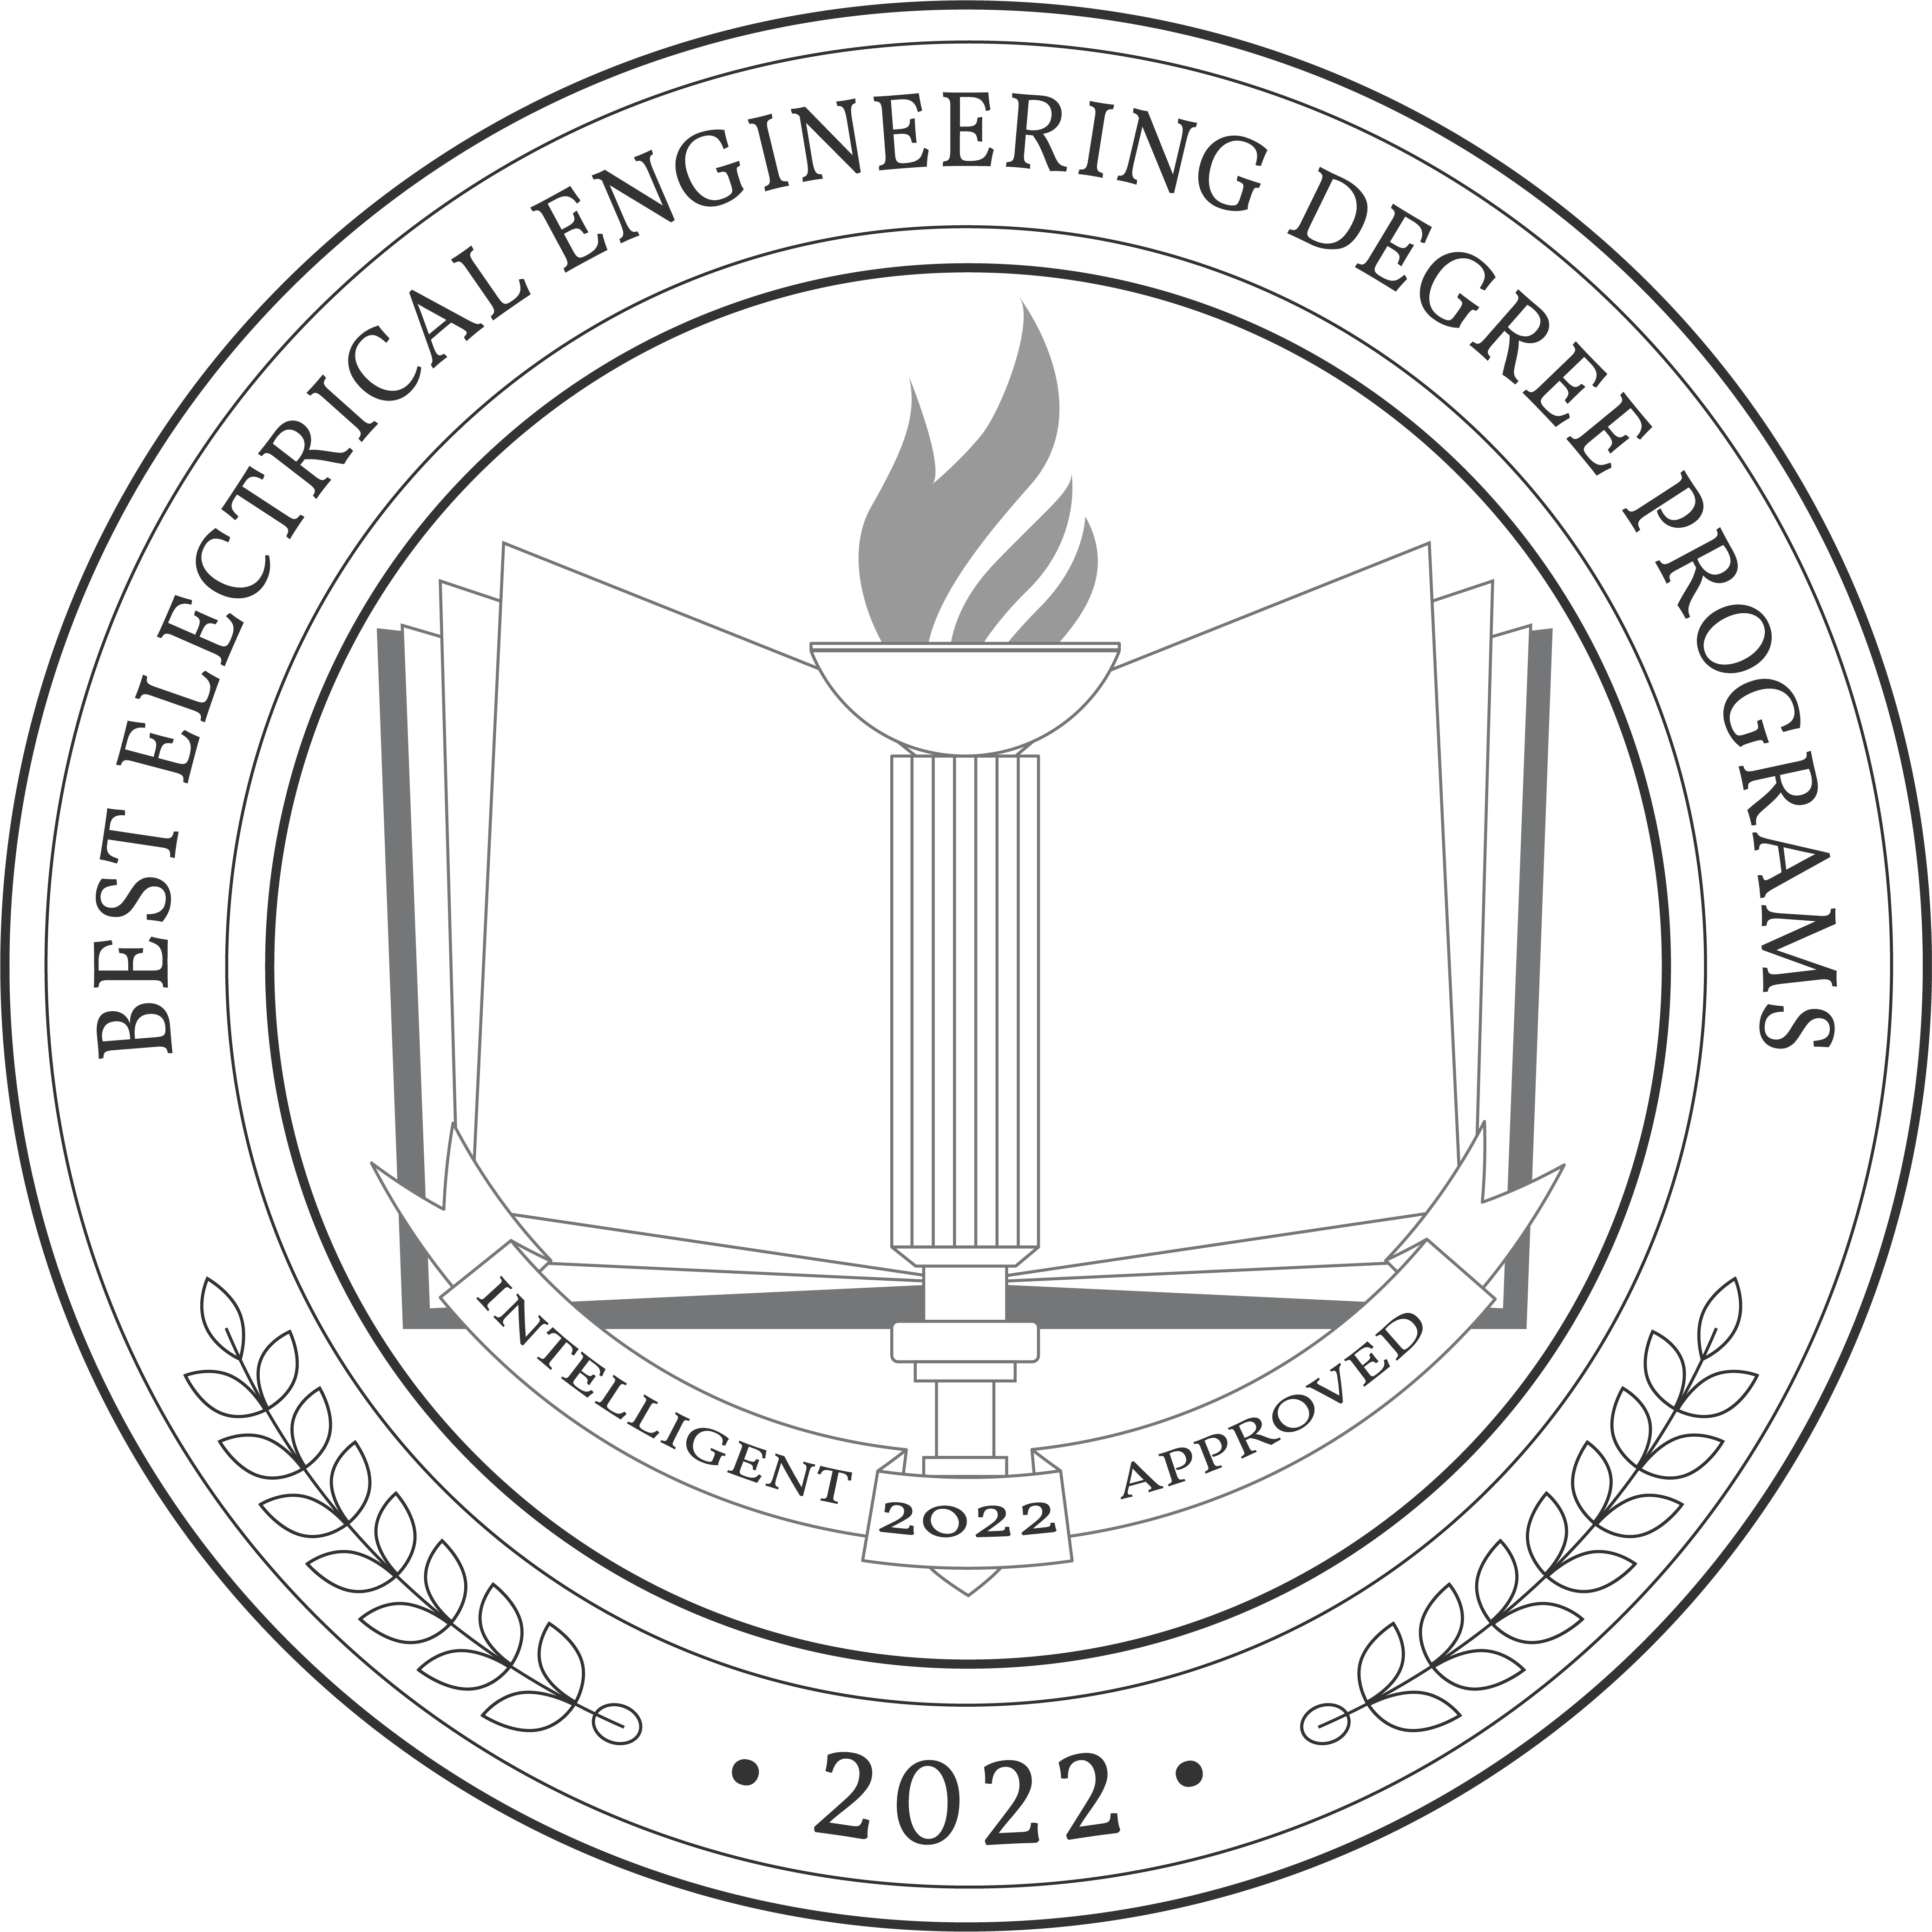 Best Electrical Engineering Degree Programs